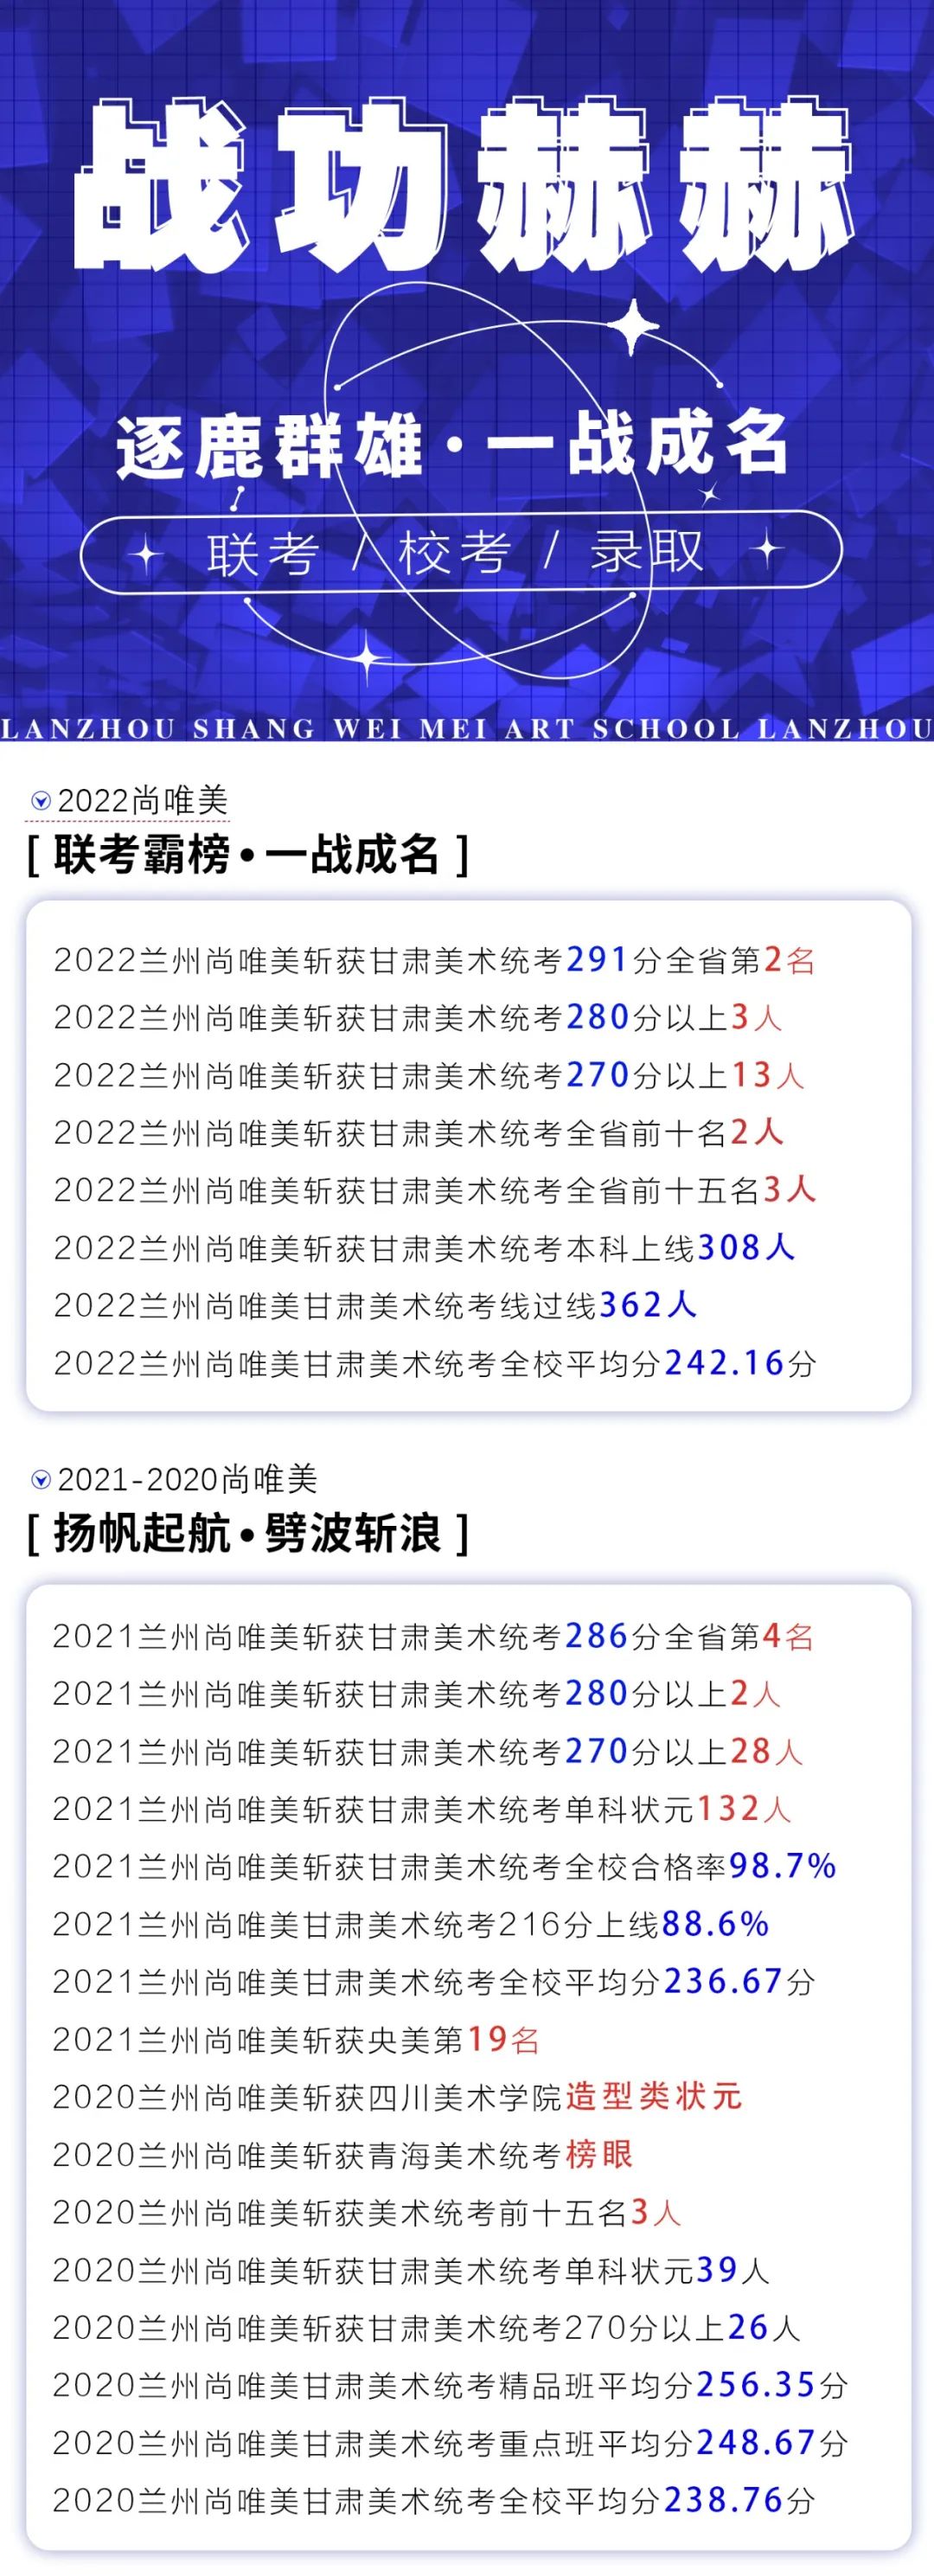 甘肃省兰州尚唯美艺术学校2022年招生简章